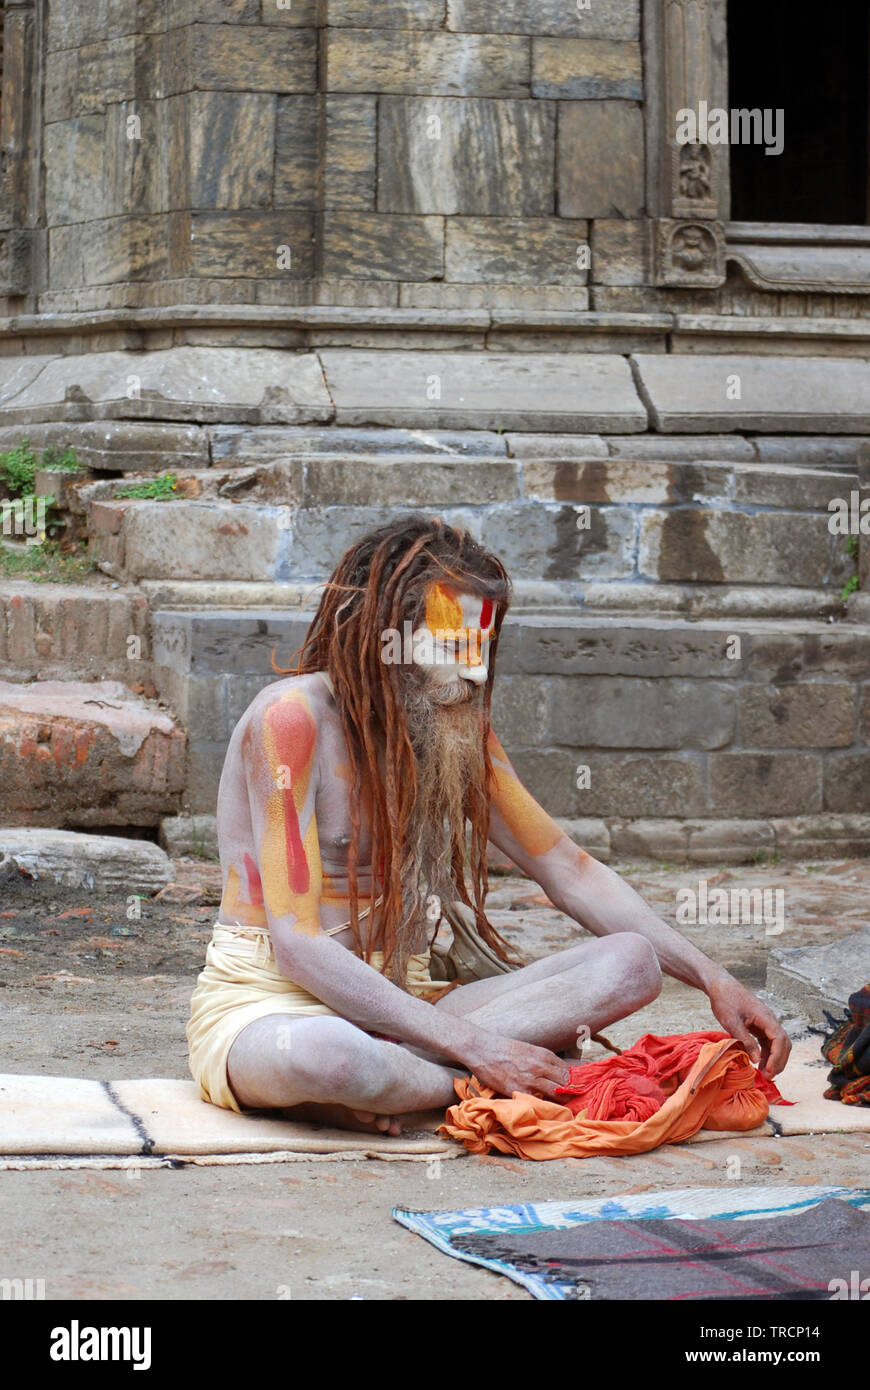 Sadhu in Pashupatinath Tempel, Kathmandu. Ein sadhu ist eine religiöse Asketen, bettelmönch oder eine heilige Person im Hinduismus, die das weltliche Leben aufgegeben hat, Stockfoto